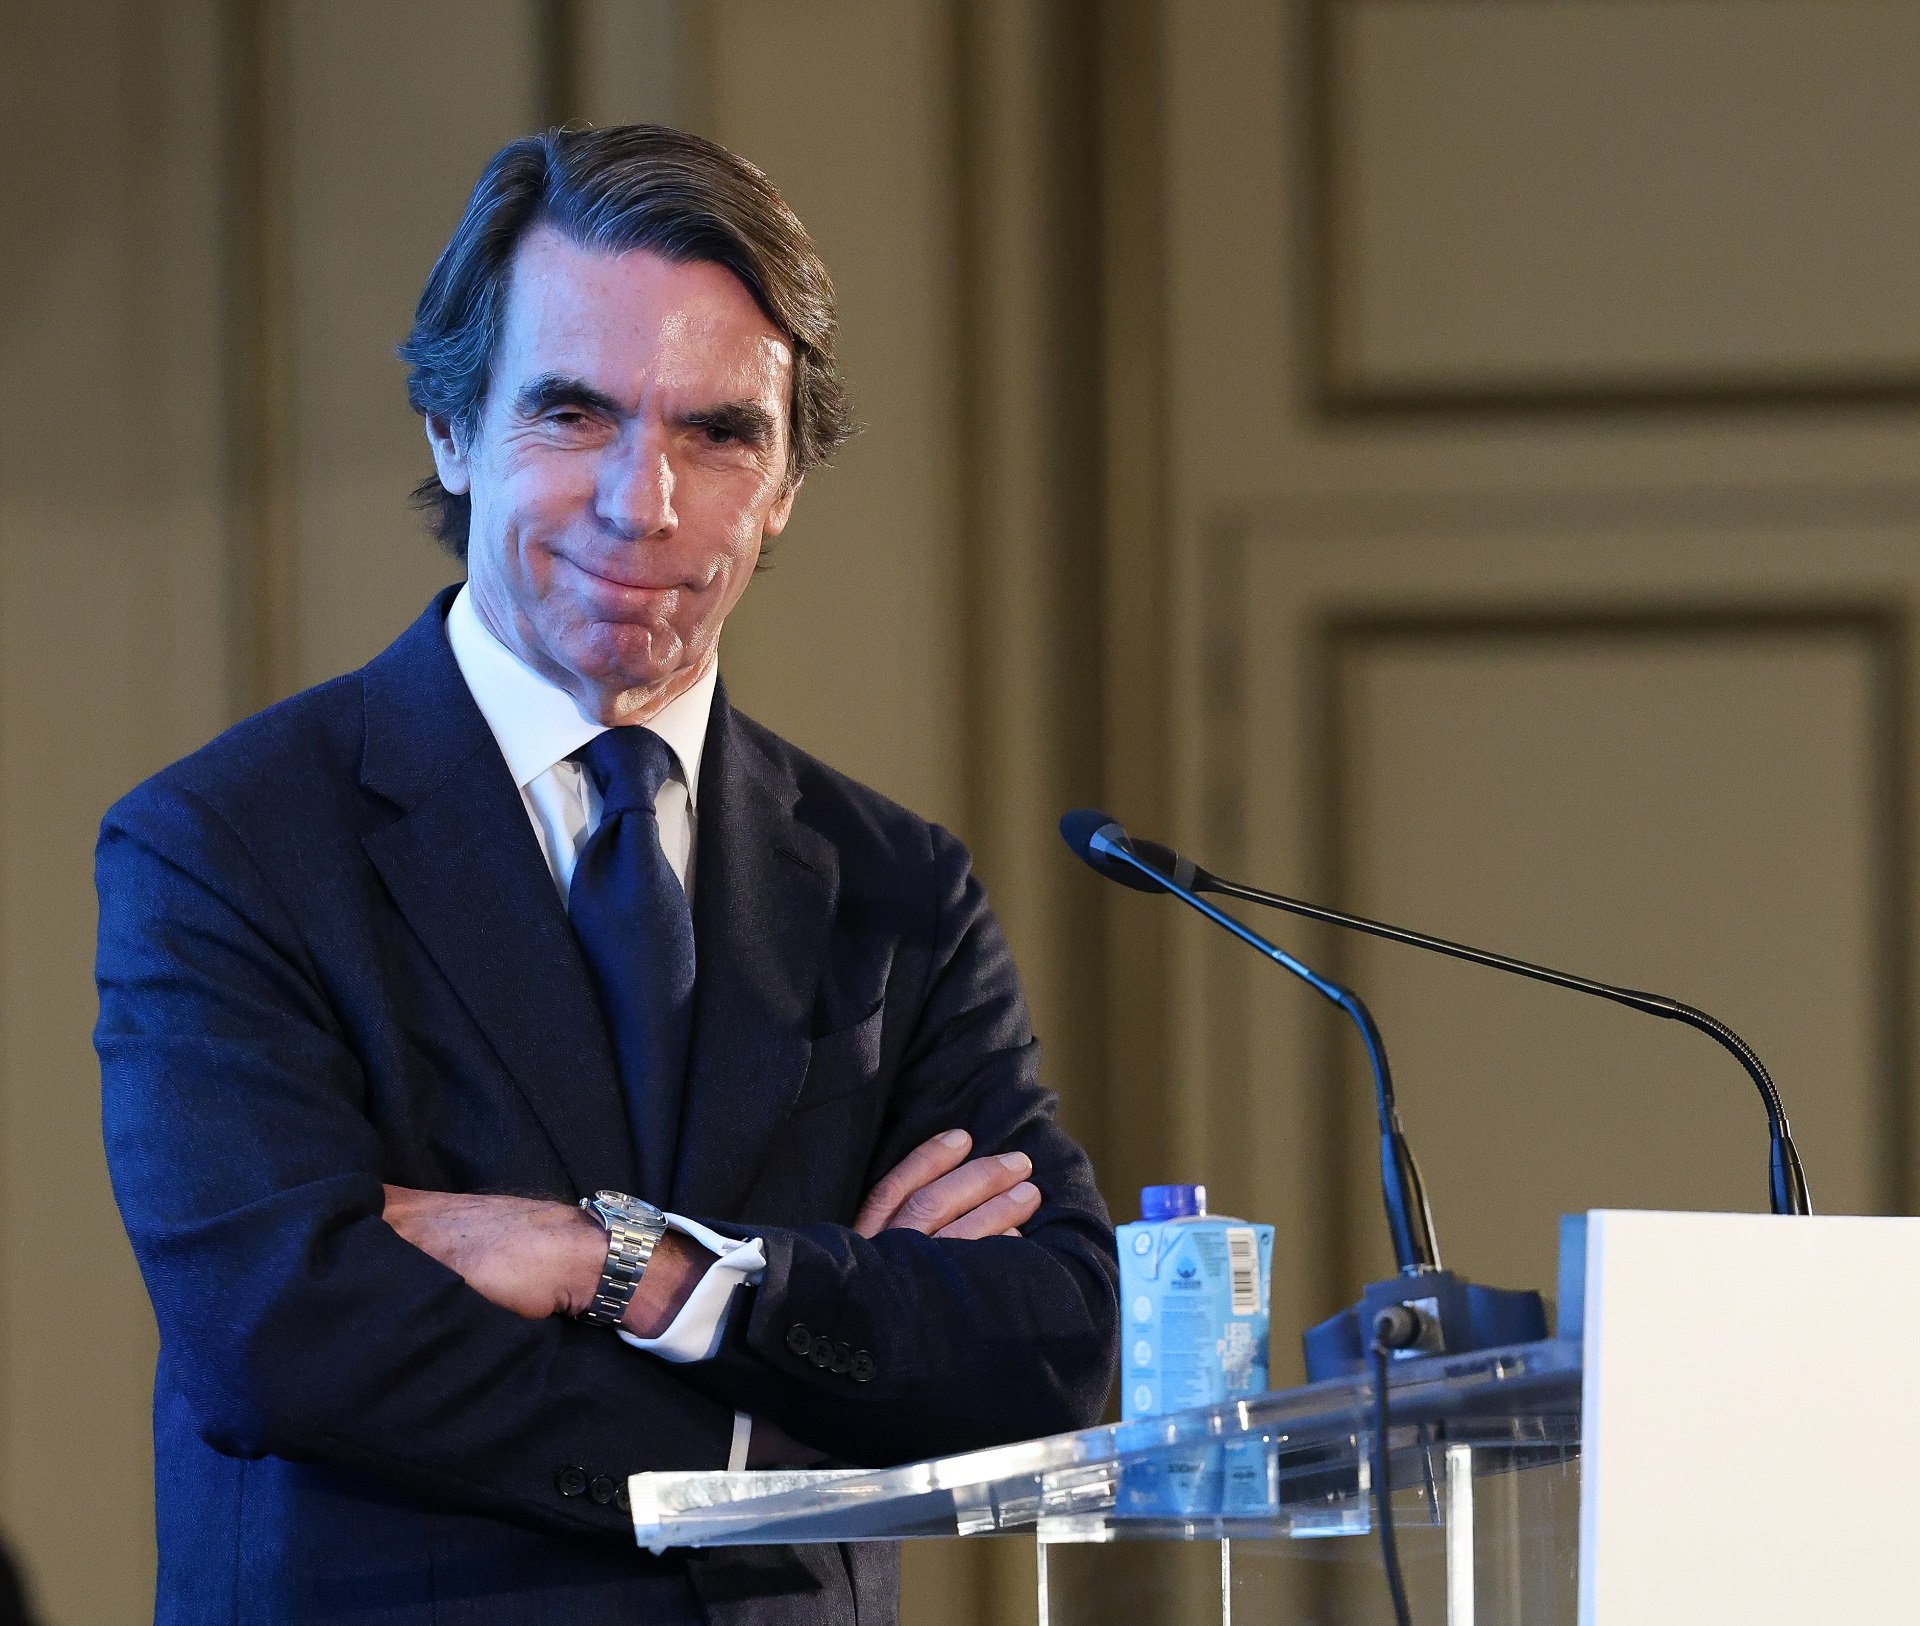 Aznar ja ha cobrat gairebé 4 milions d'euros com a assessor de Rupert Murdoch